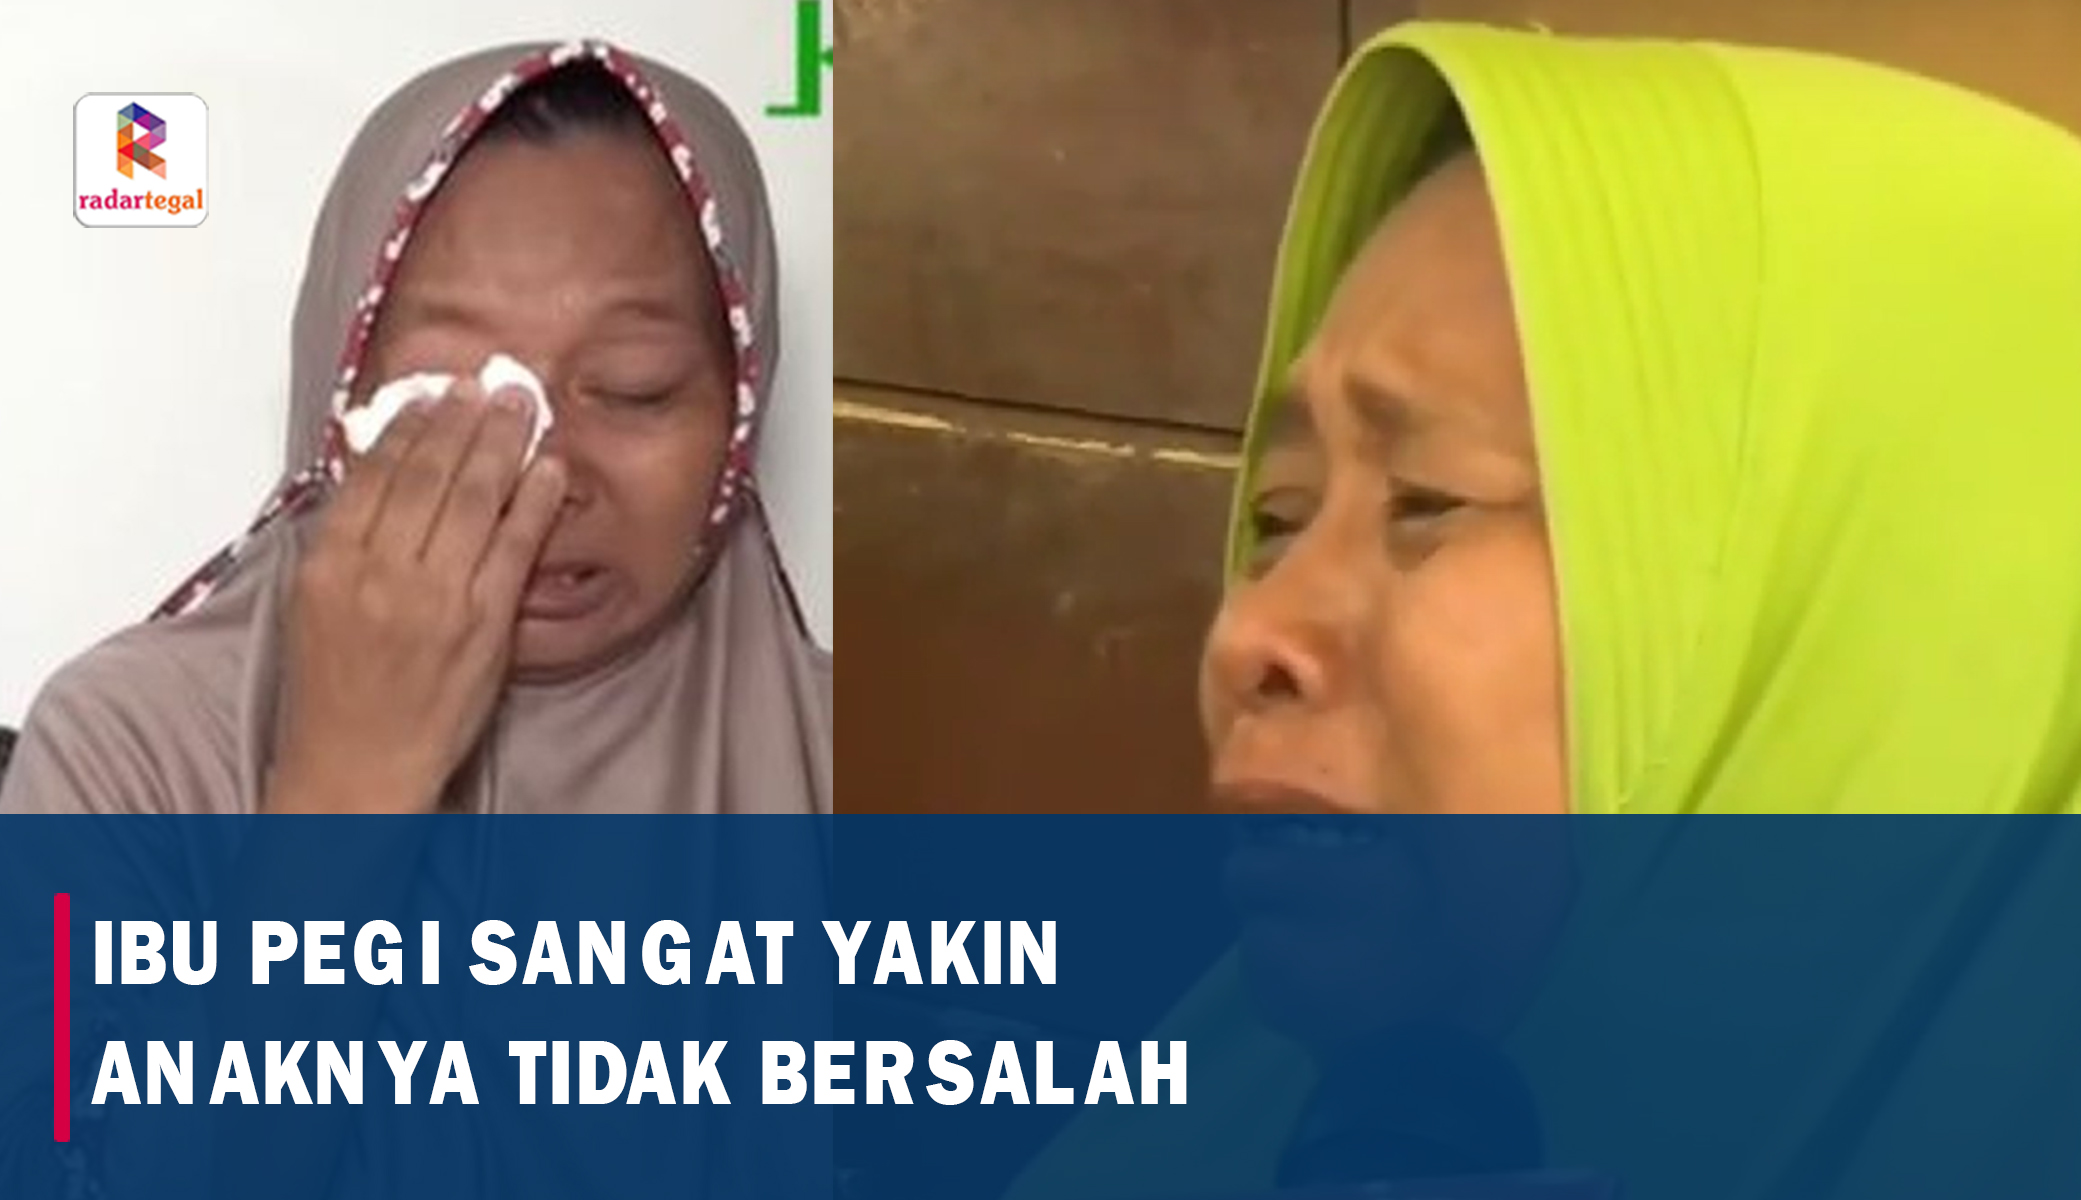  Tolak Uang Suap, Ibu Pegi DPO Pembunuhan Vina dan Eki: Anak Saya yang Tidak Bersalah!